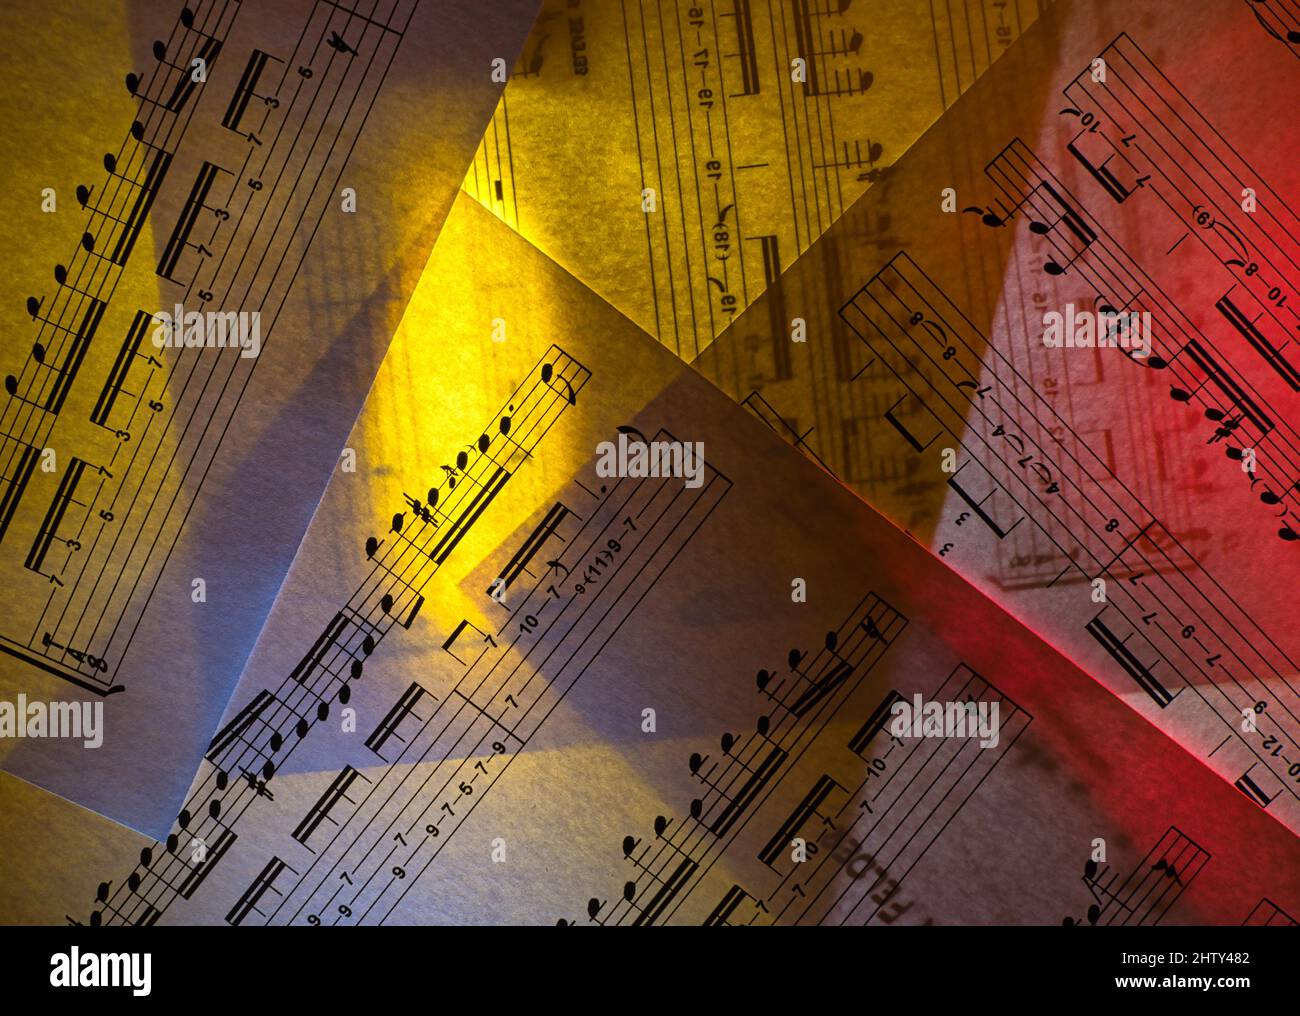 Partituras para guitarra, iluminadas desde atrás con luz amarilla y roja Foto de stock